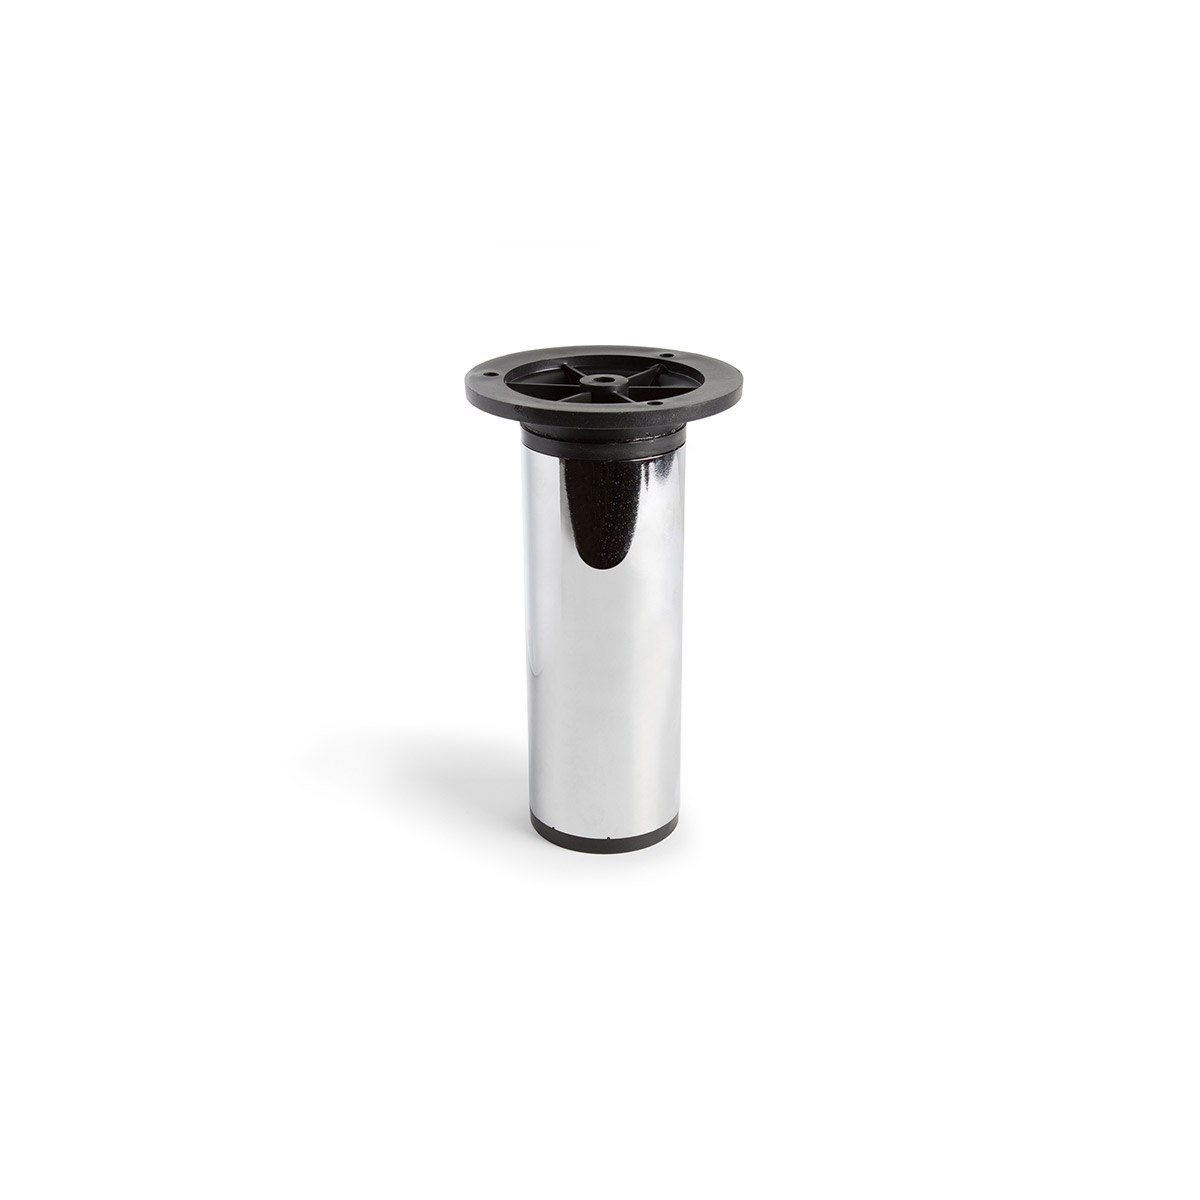 Pied cylindrique réglable en acier d'une hauteur de 150 mm et finition chrome brillant. Dimensions: 50x50x150 mm